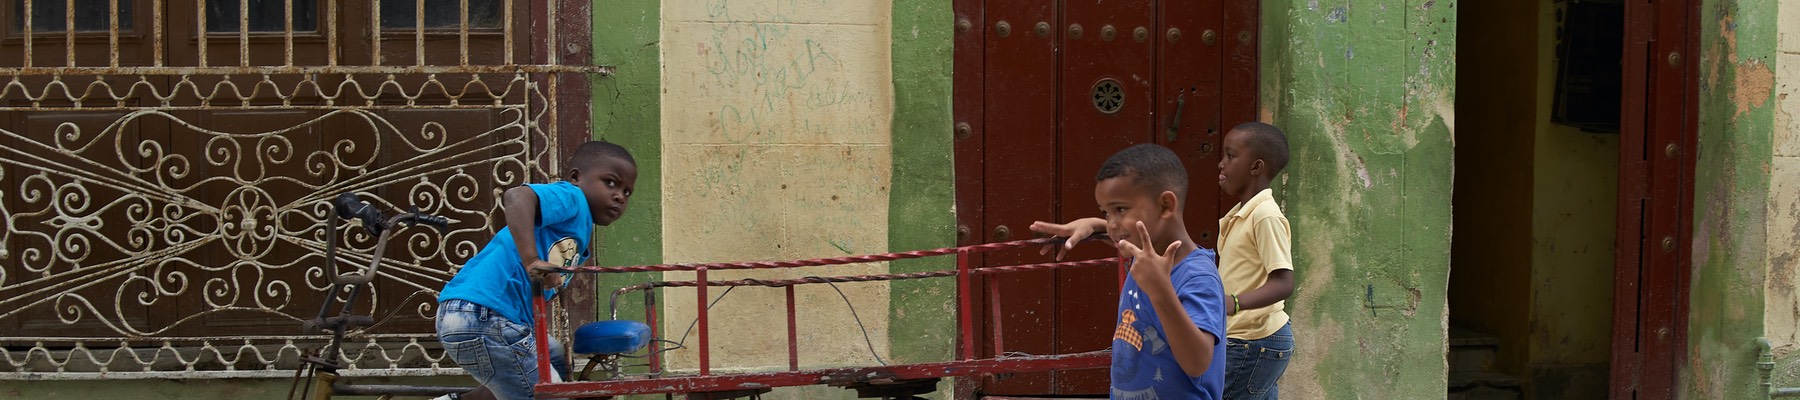 Havannai gyerekek az utcán 1